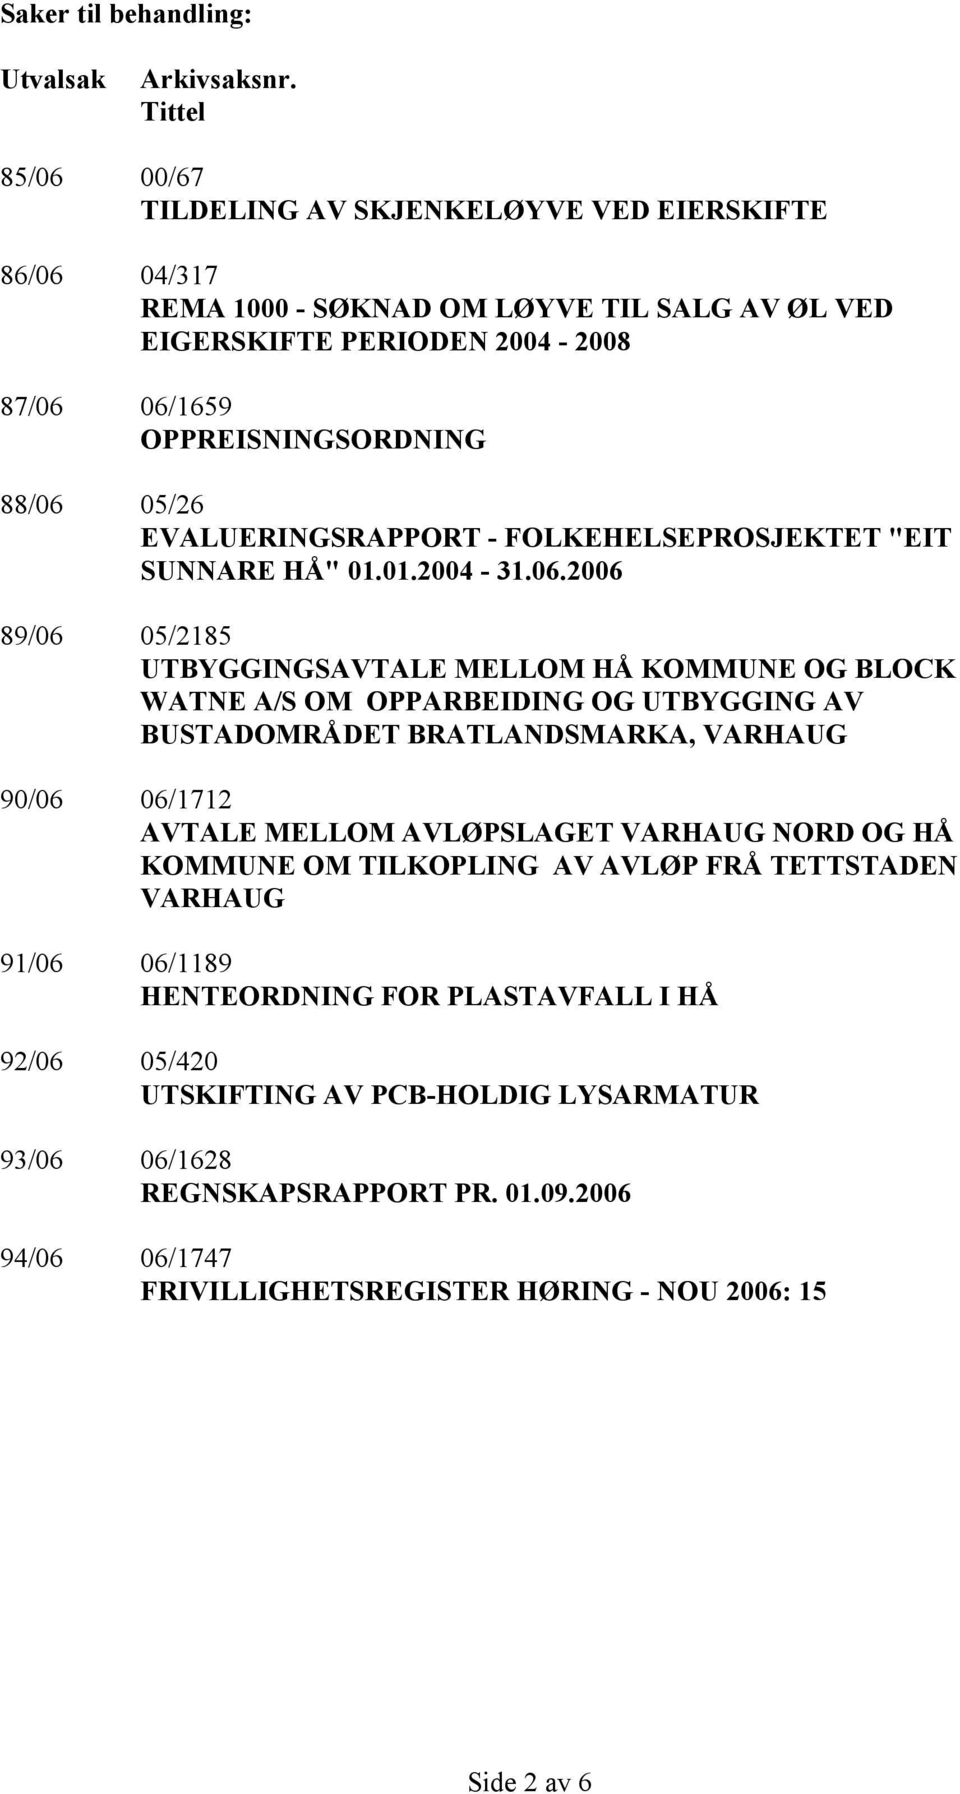 EVALUERINGSRAPPORT - FOLKEHELSEPROSJEKTET "EIT SUNNARE HÅ" 01.01.2004-31.06.